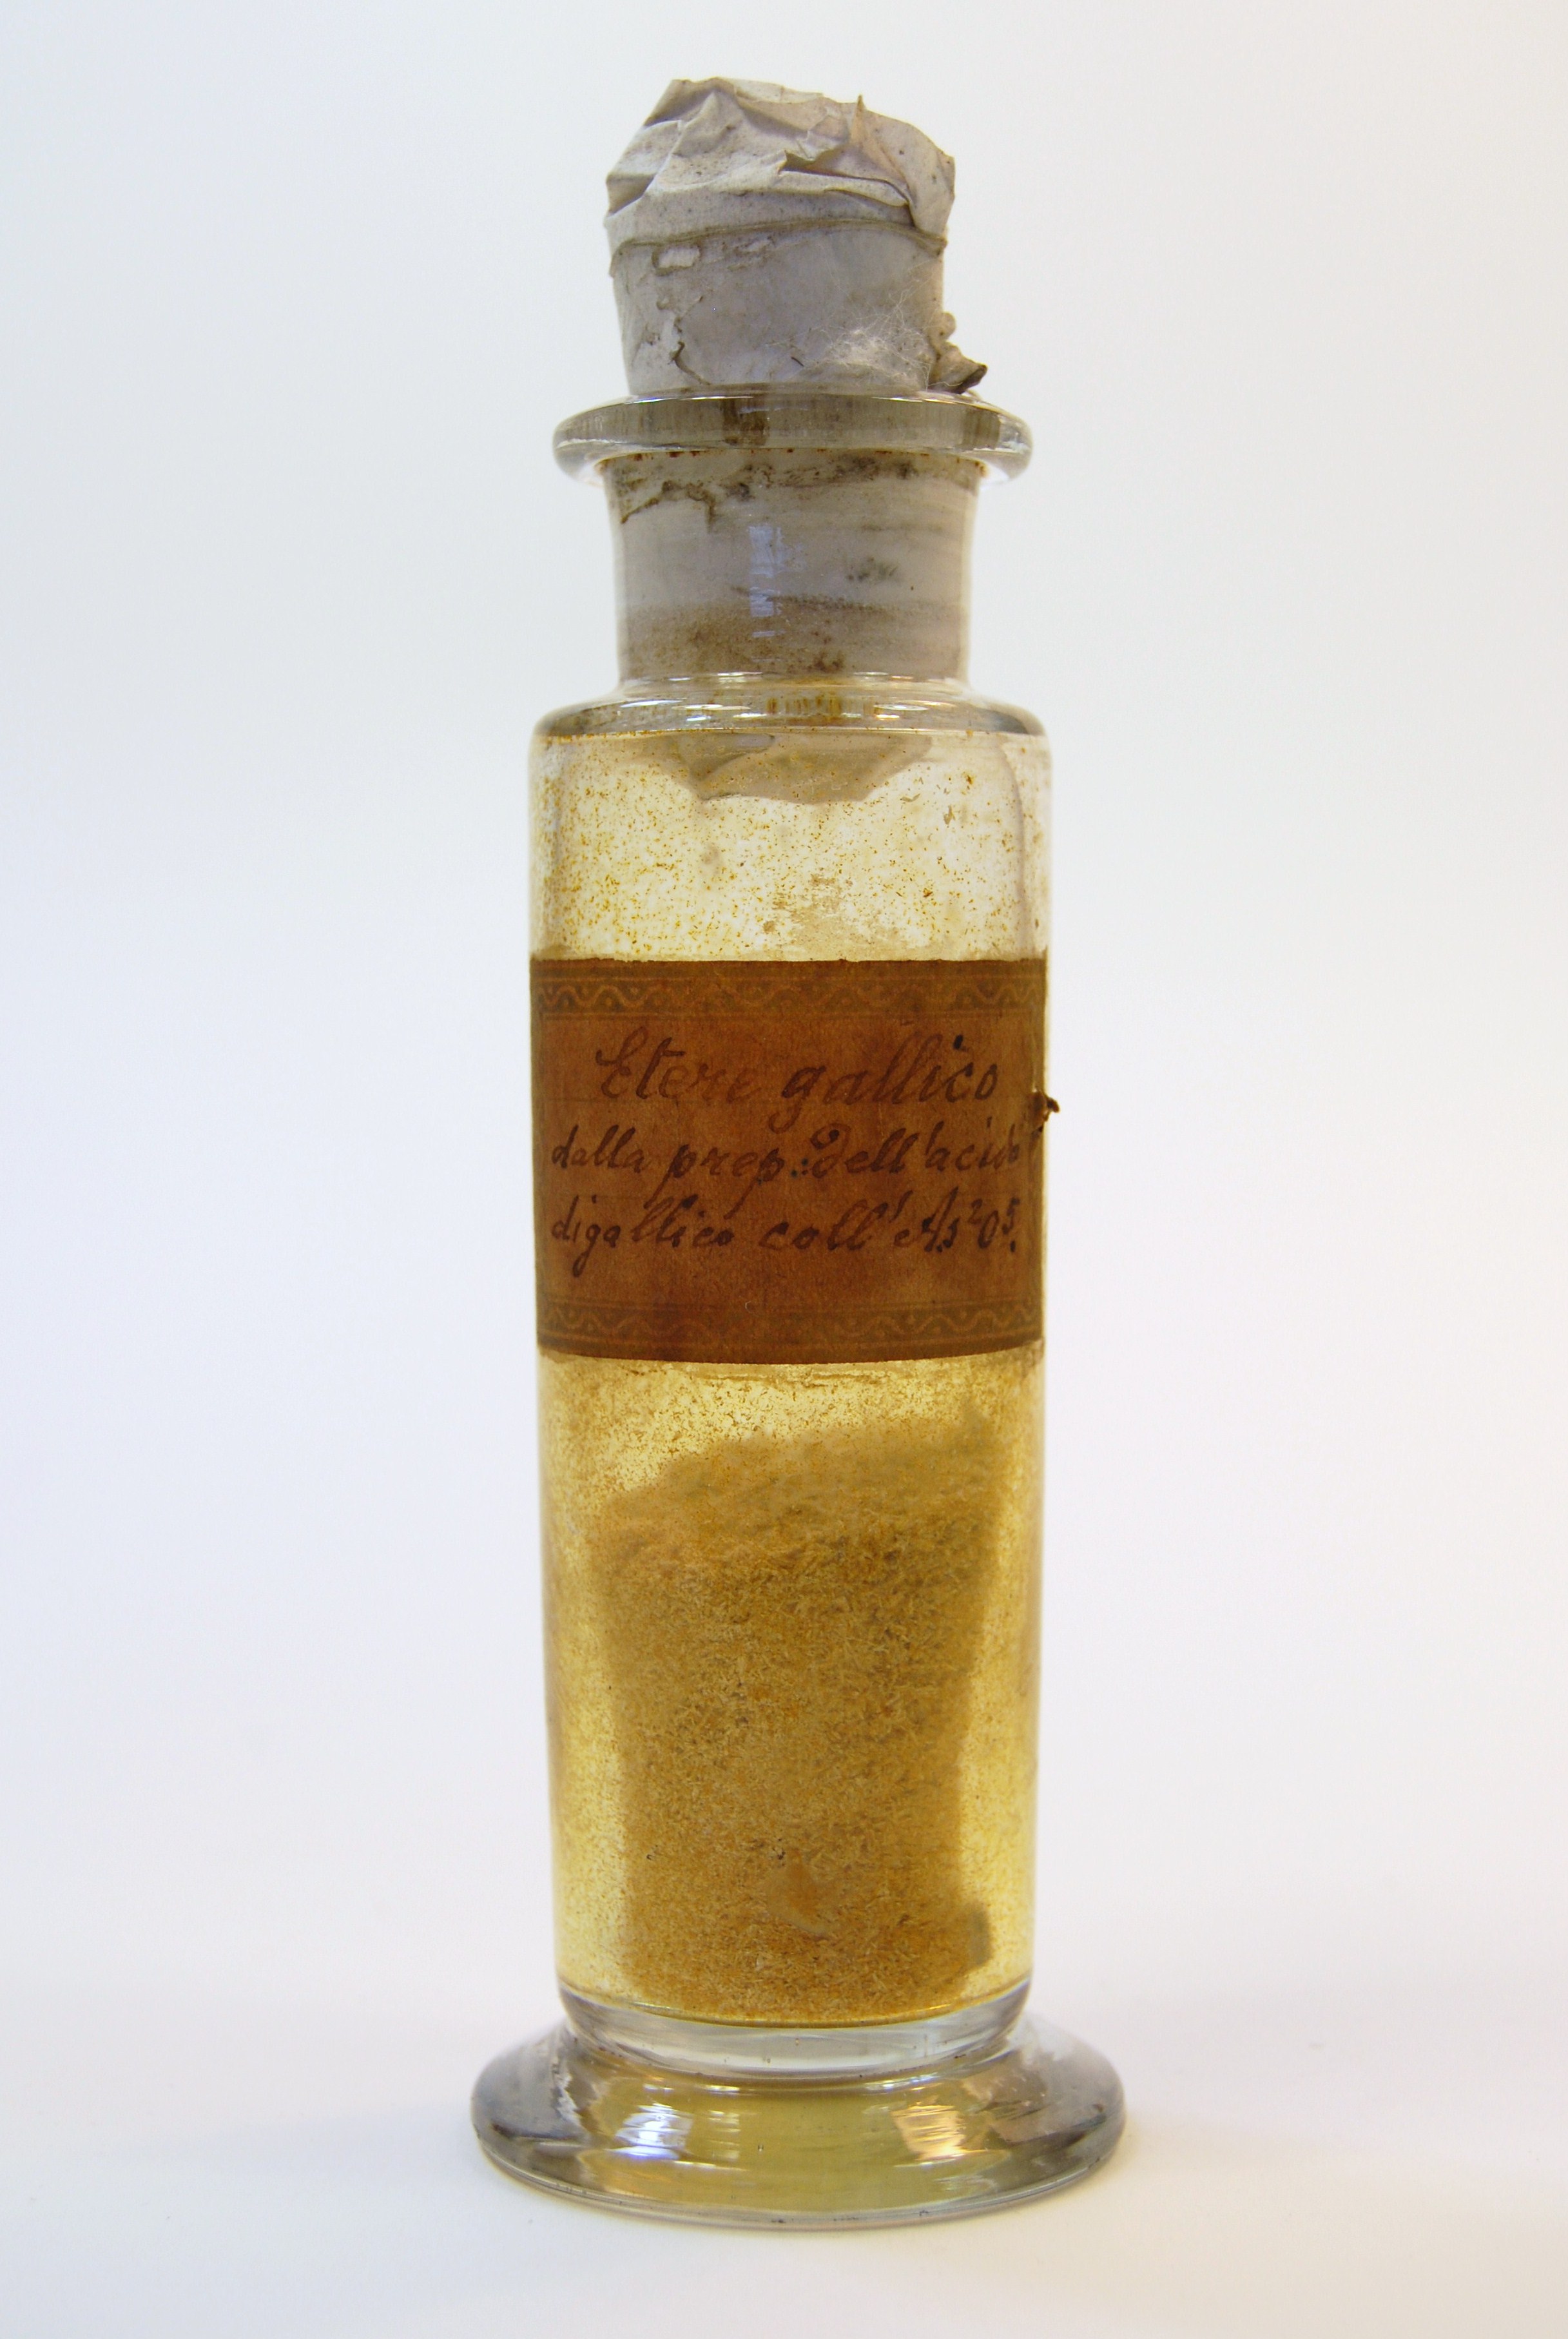 etere gallico (prodotto chimico, di sintesi) di Ugo Schiff (laboratorio) - scuola chimica fiorentina (metà/ inizio XIX/ XX)